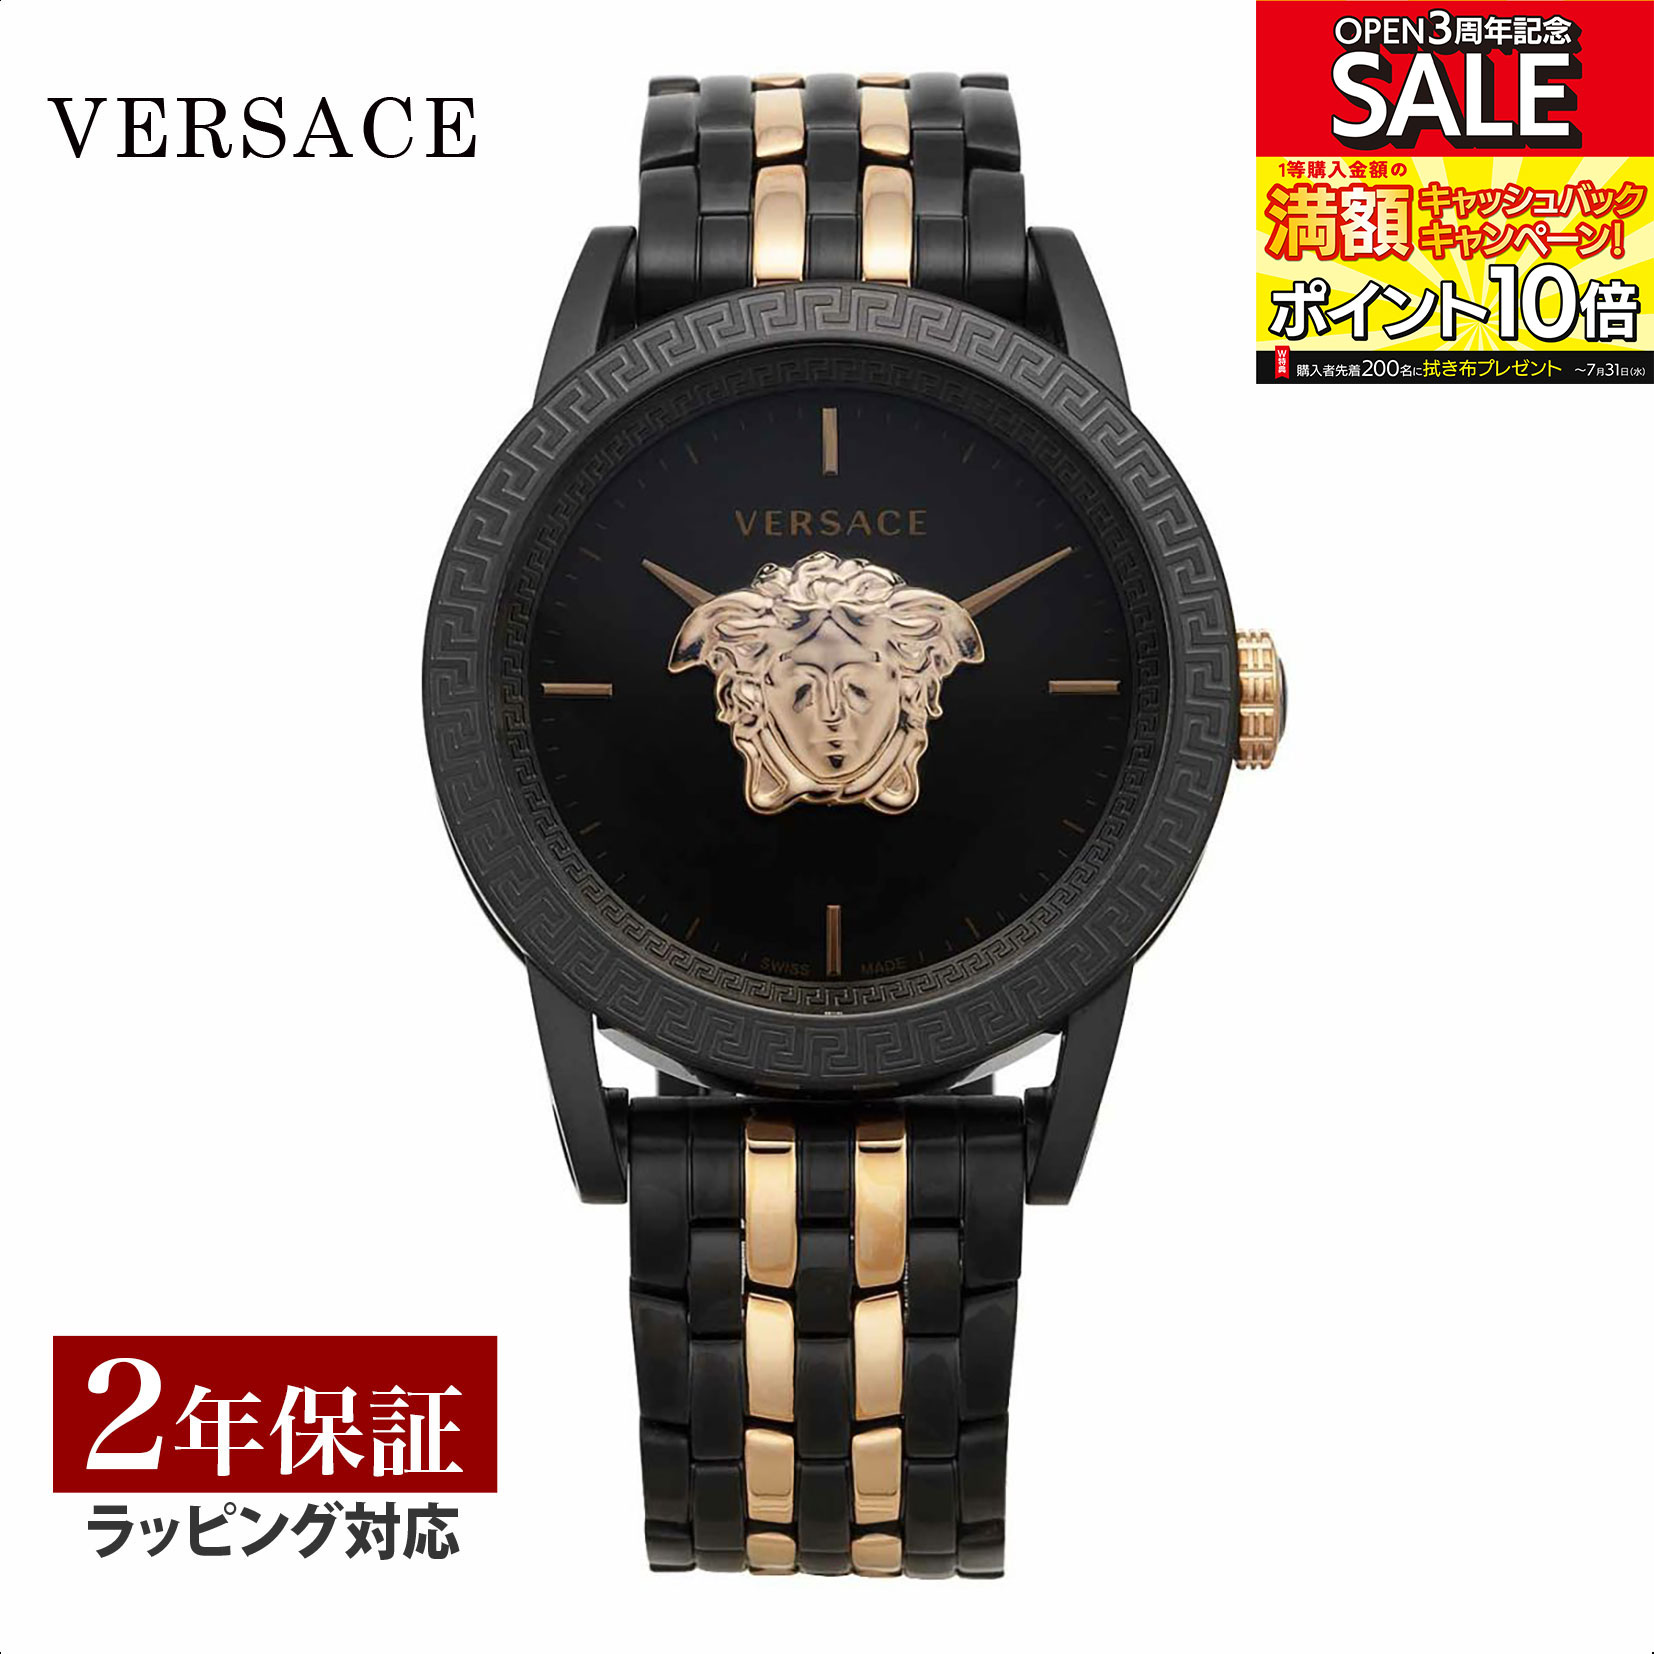 ヴェルサーチ 腕時計（メンズ） ヴェルサーチェ ヴェルサーチ VERSACE メンズ 時計 PALAZZO クォーツ ブラック VERD01623 時計 腕時計 高級腕時計 ブランド